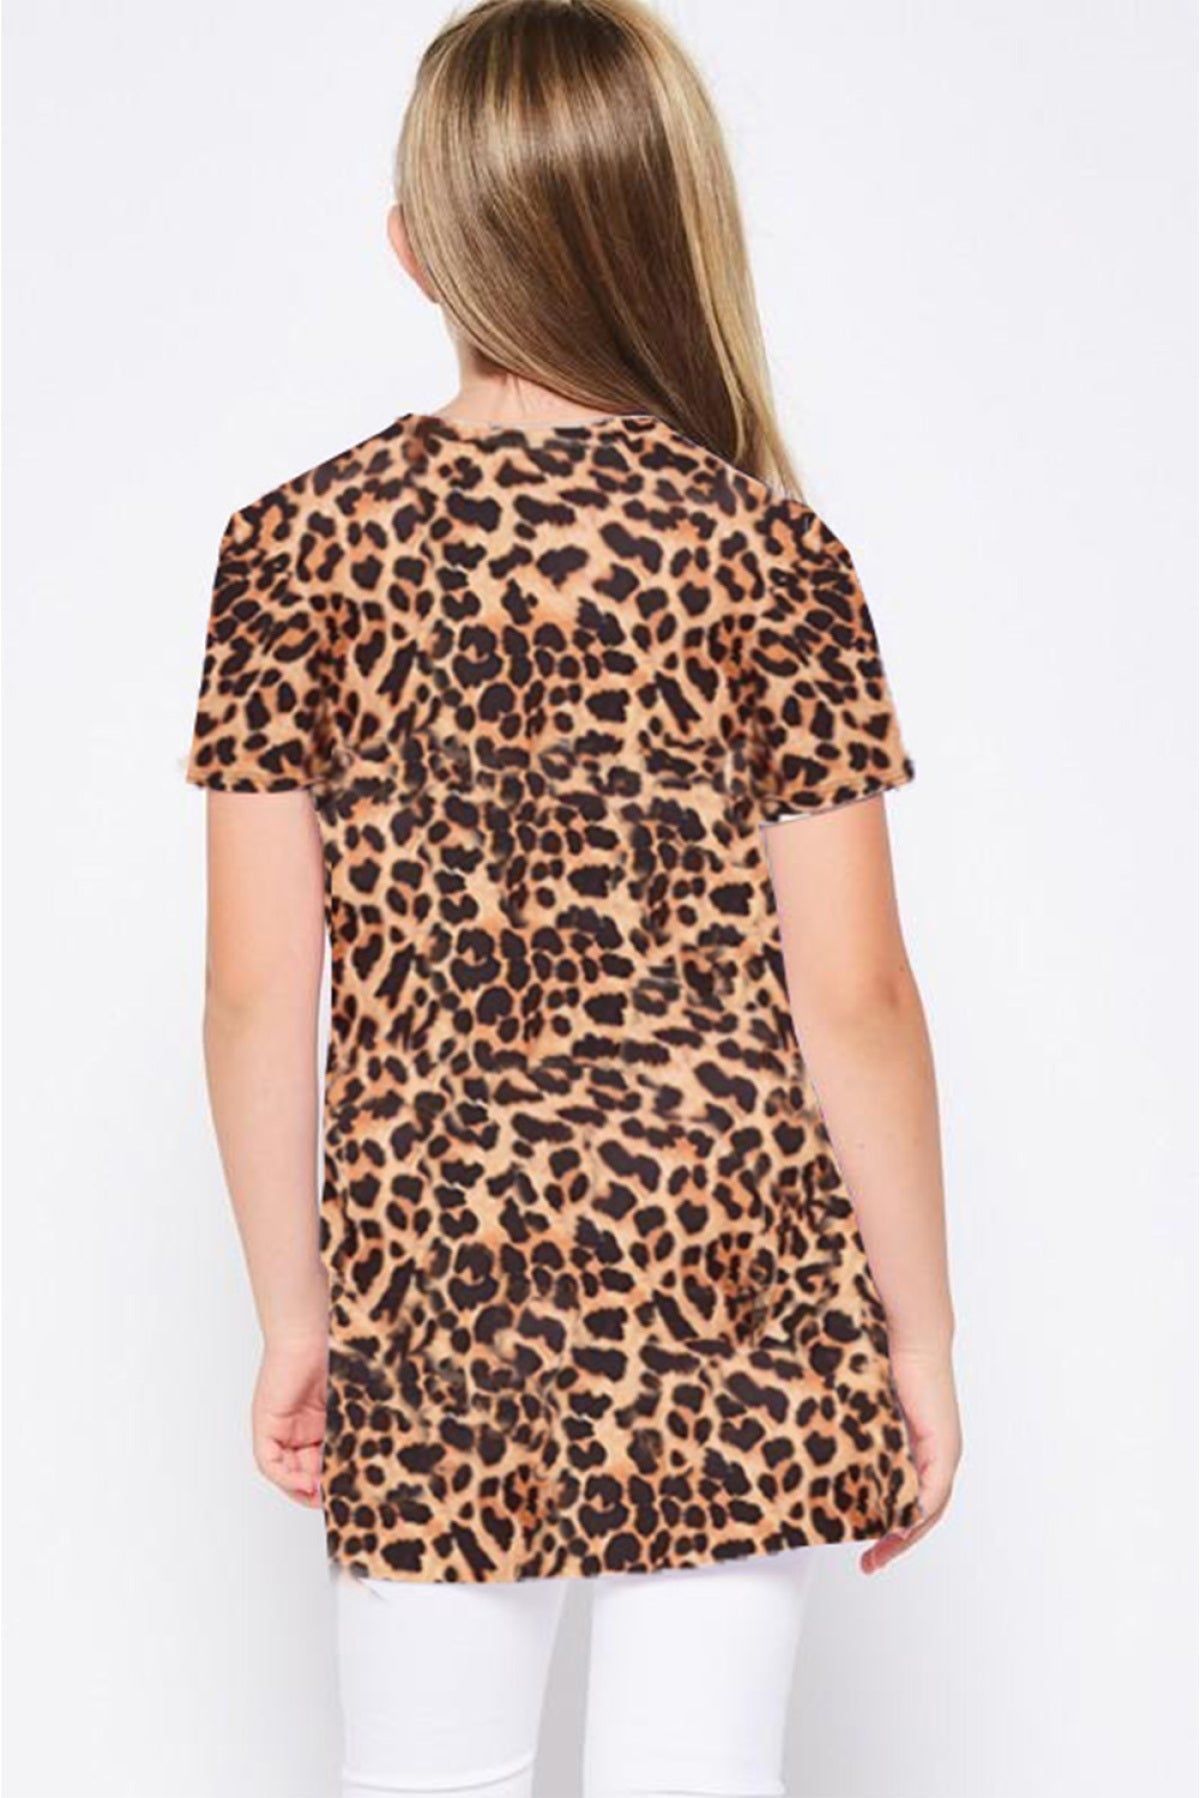 Leopard Print Twist Girls Tee